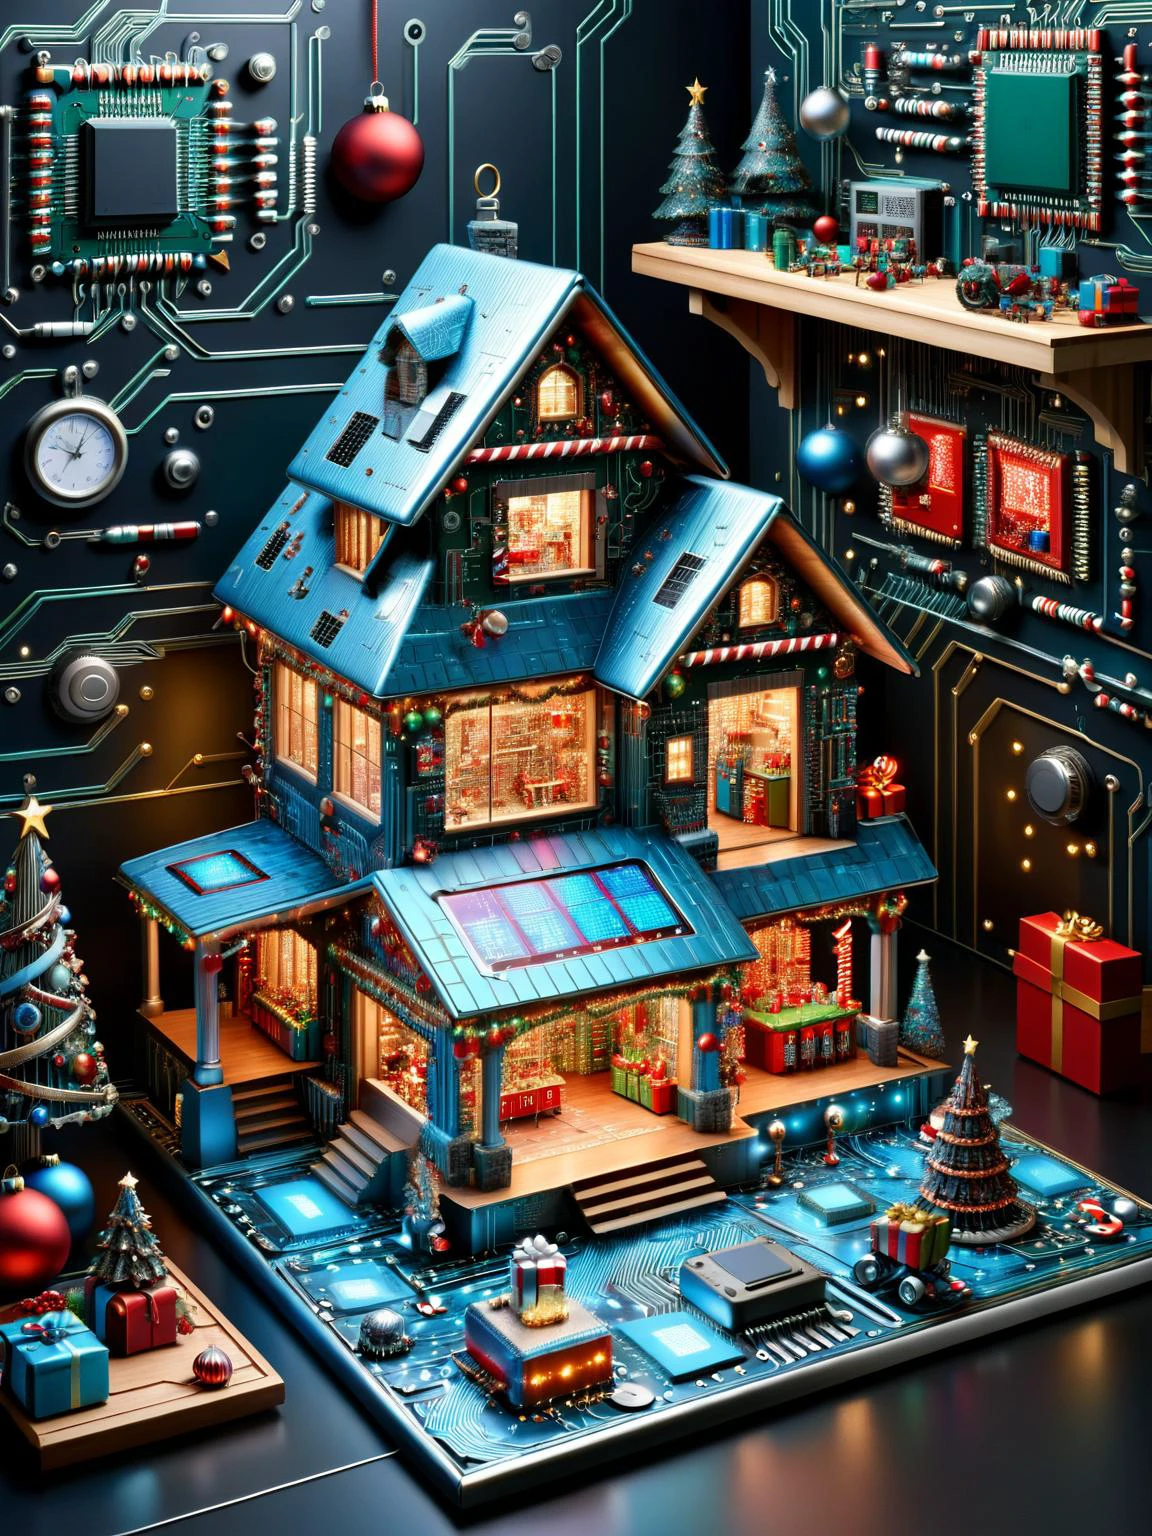 ral-semi-conducteur, A whimsical vision of a ral-semi-conducteur styled Santa's workshop, avec des elfes et des jouets présentant tous des motifs de circuits, prêt pour une livraison de Noël futuriste et imaginative, vibrant, hdr, 